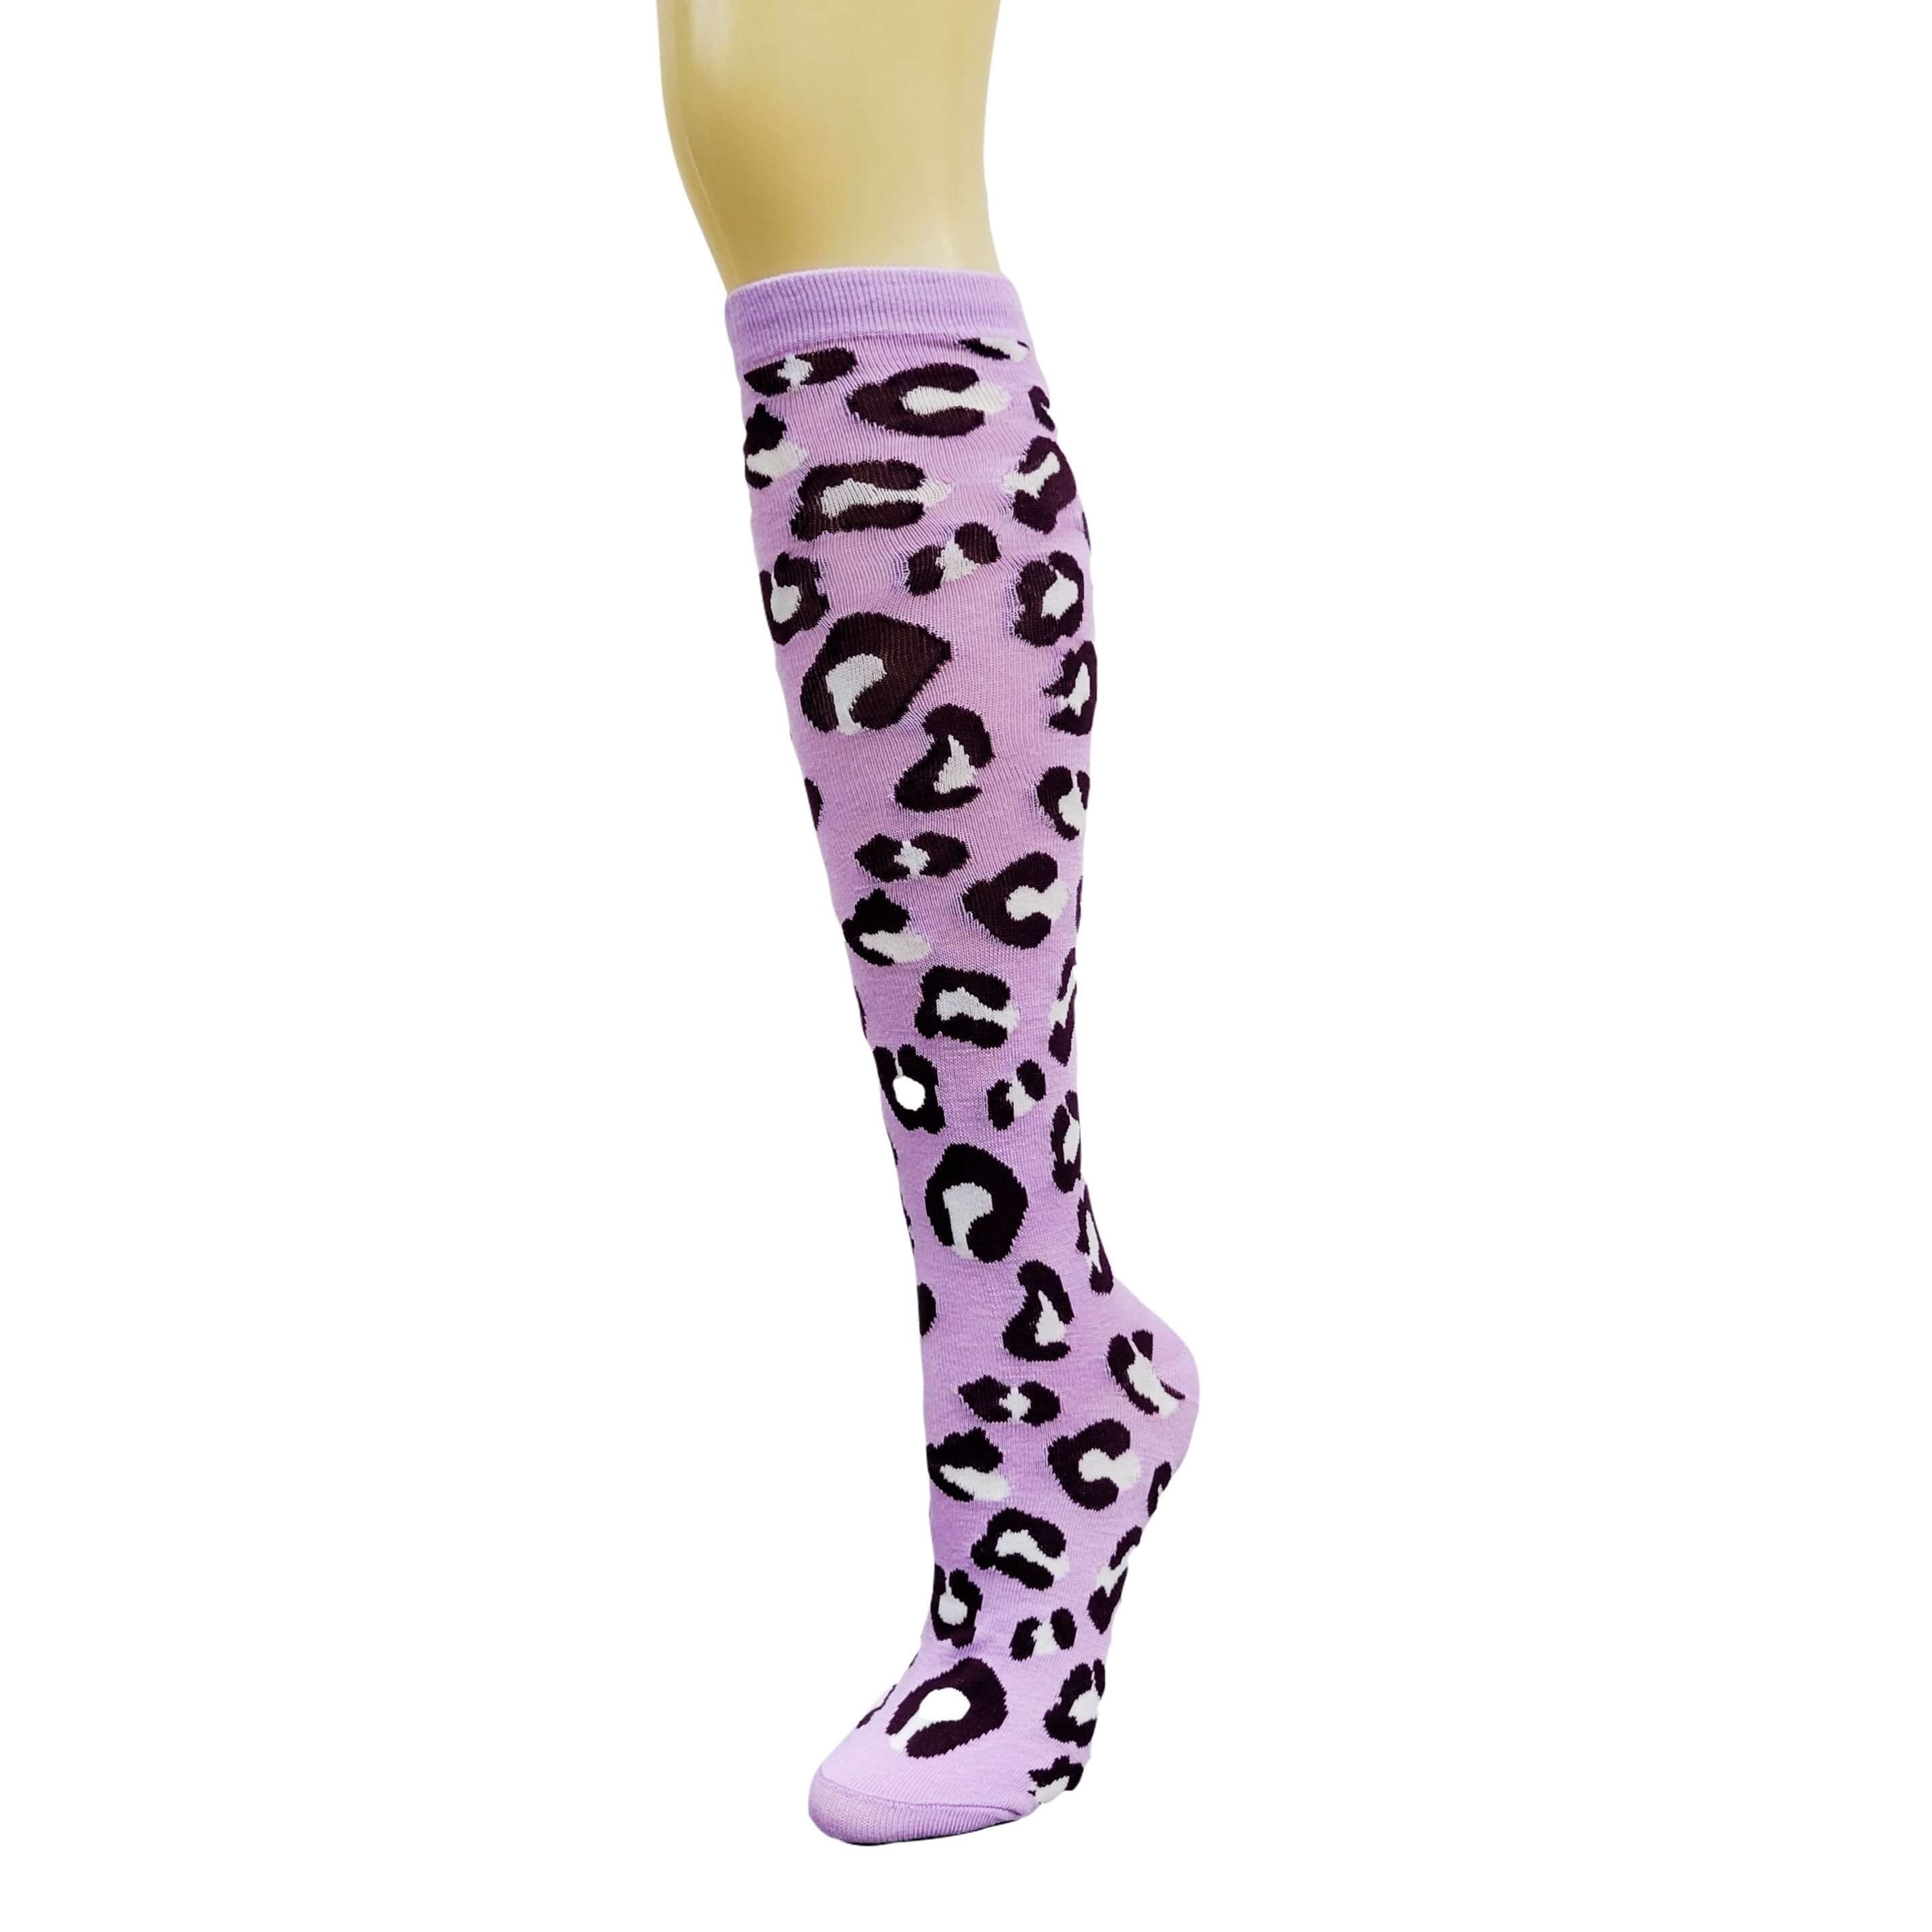 Animal (Leopard) Print Socks (Knee High)